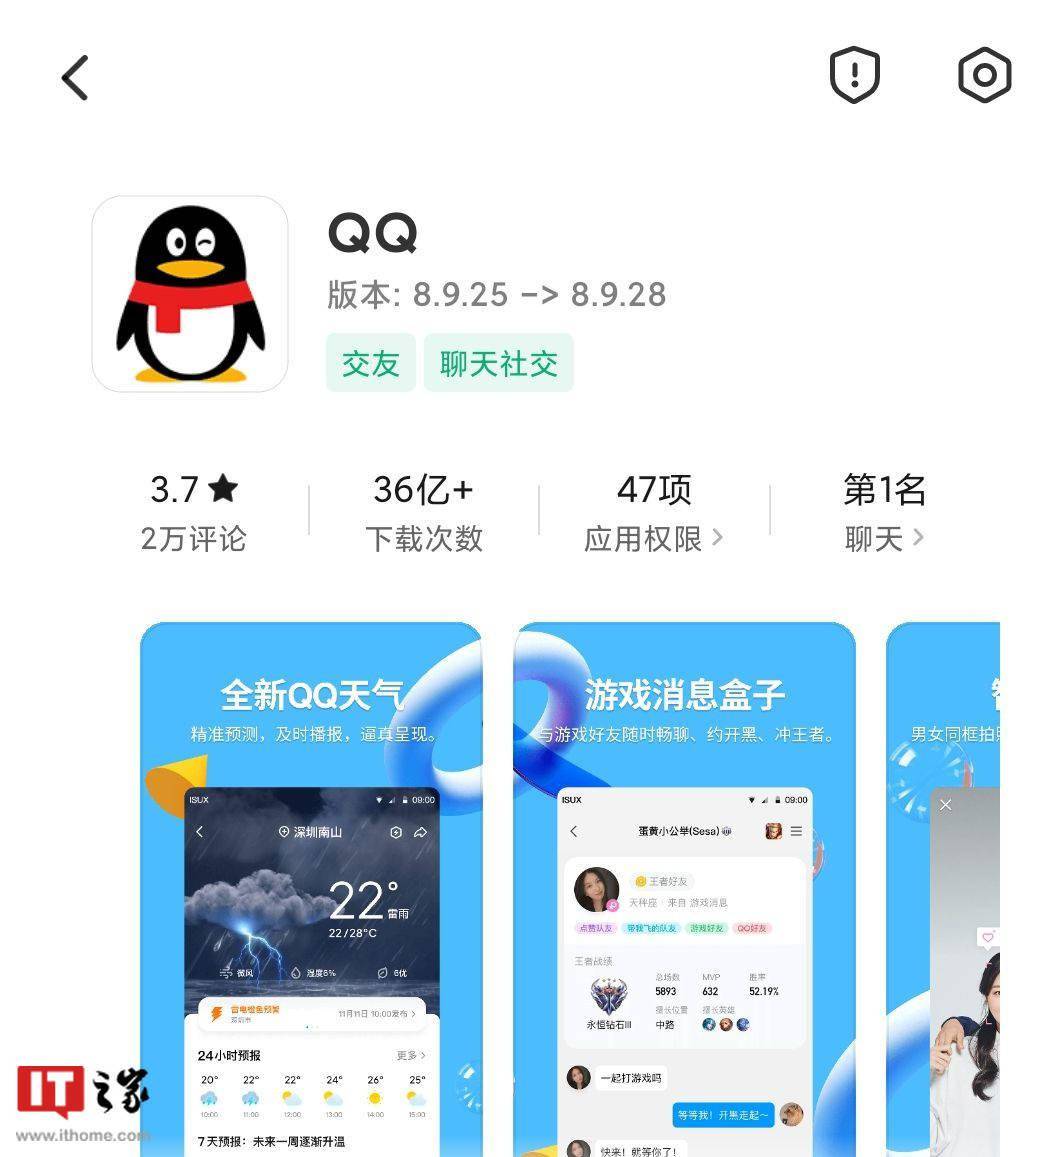 腾讯 QQ 安卓版 8.9.28 正式版发布：增加群帖子发言范围等